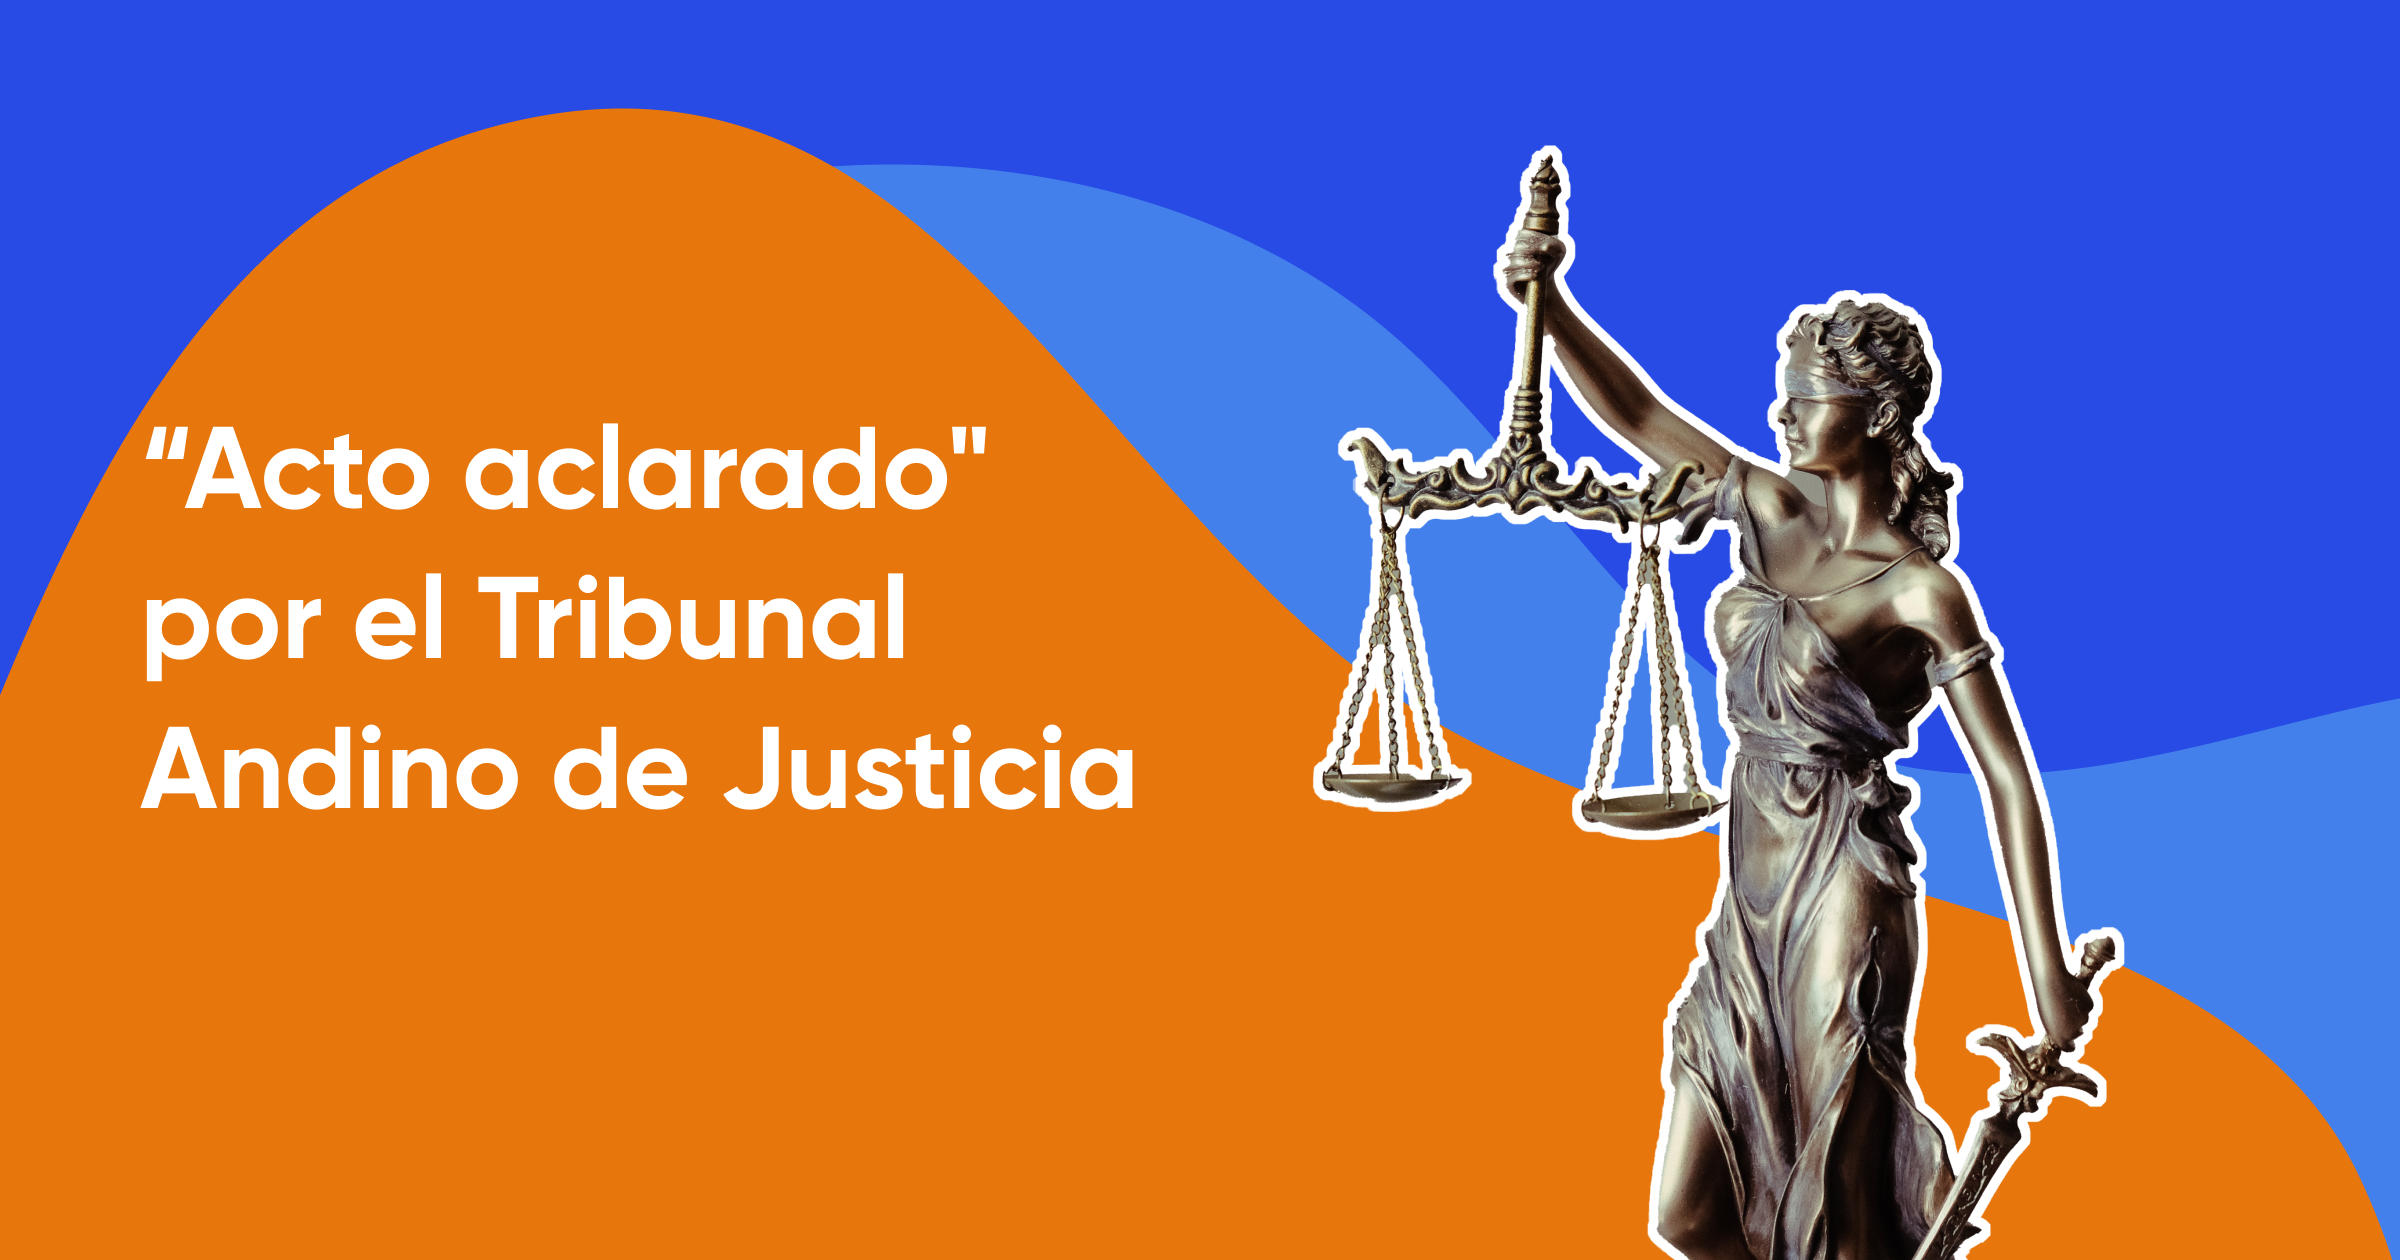 "Doctrina del “acto aclarado” adoptada por la Corte Andina de Justicia